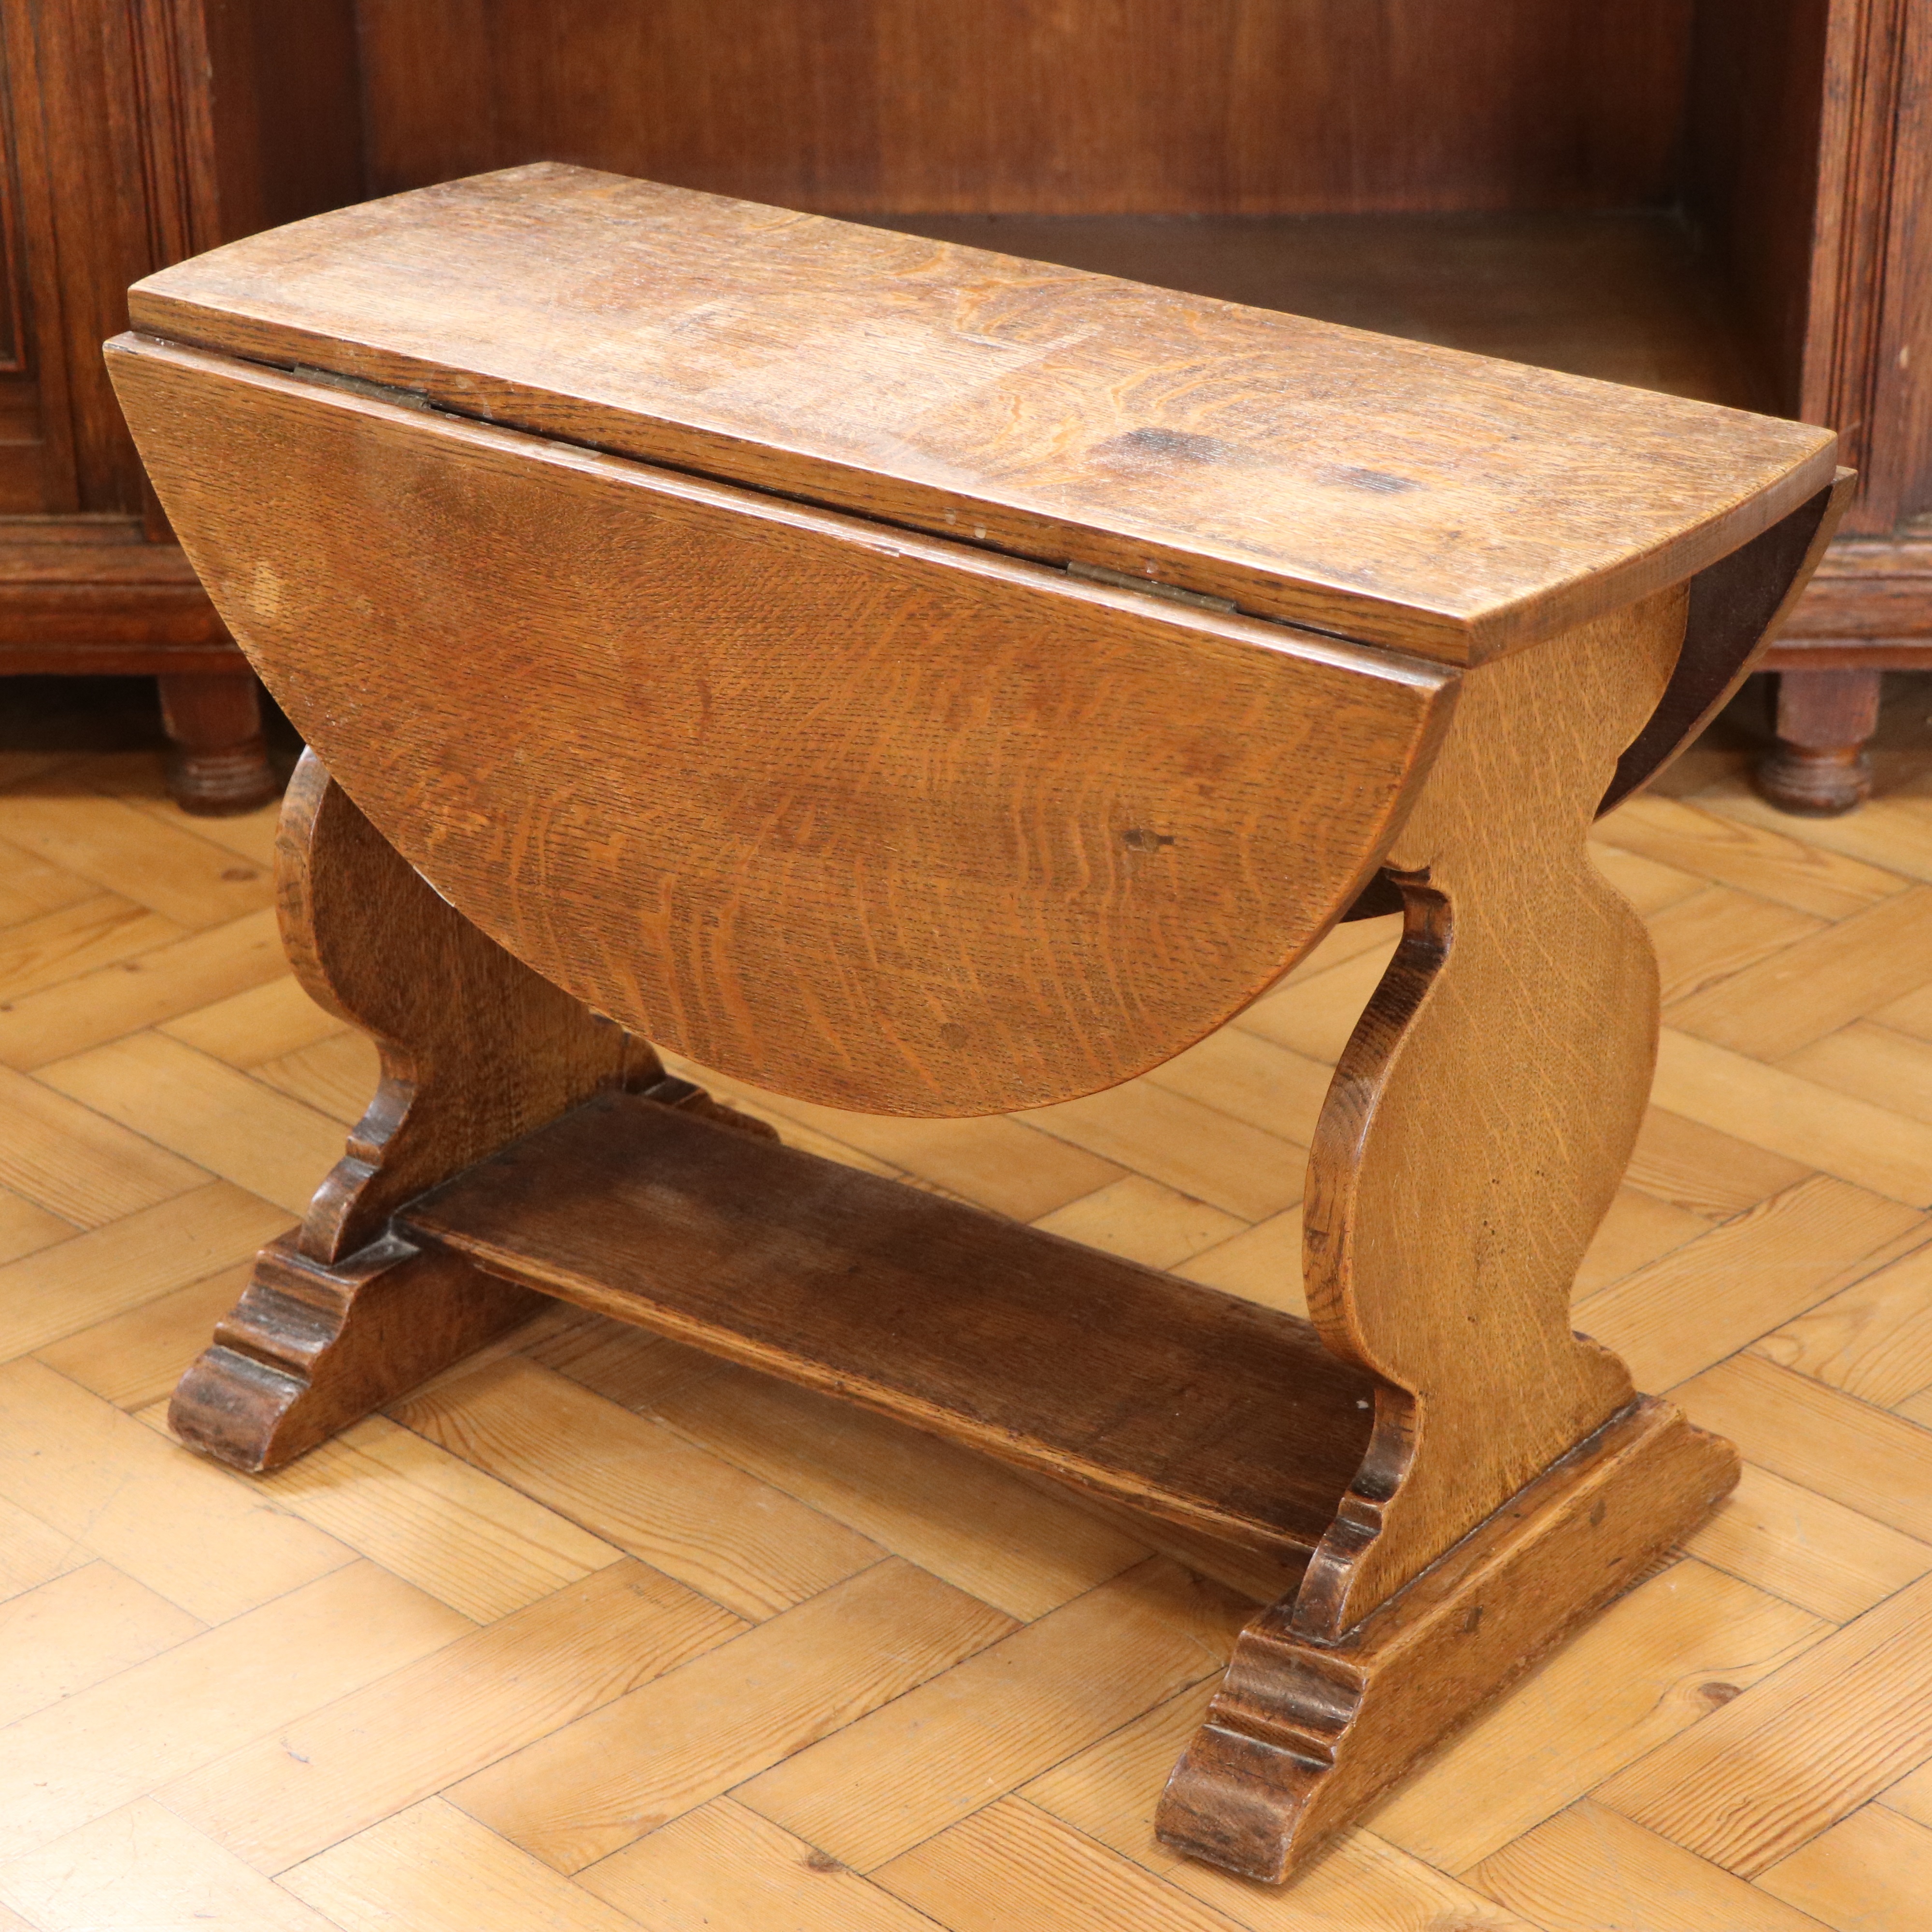 A 17th Century influenced oak drop-leaf coffee or lamp table, 61 cm x 69 cm x 46 cm high